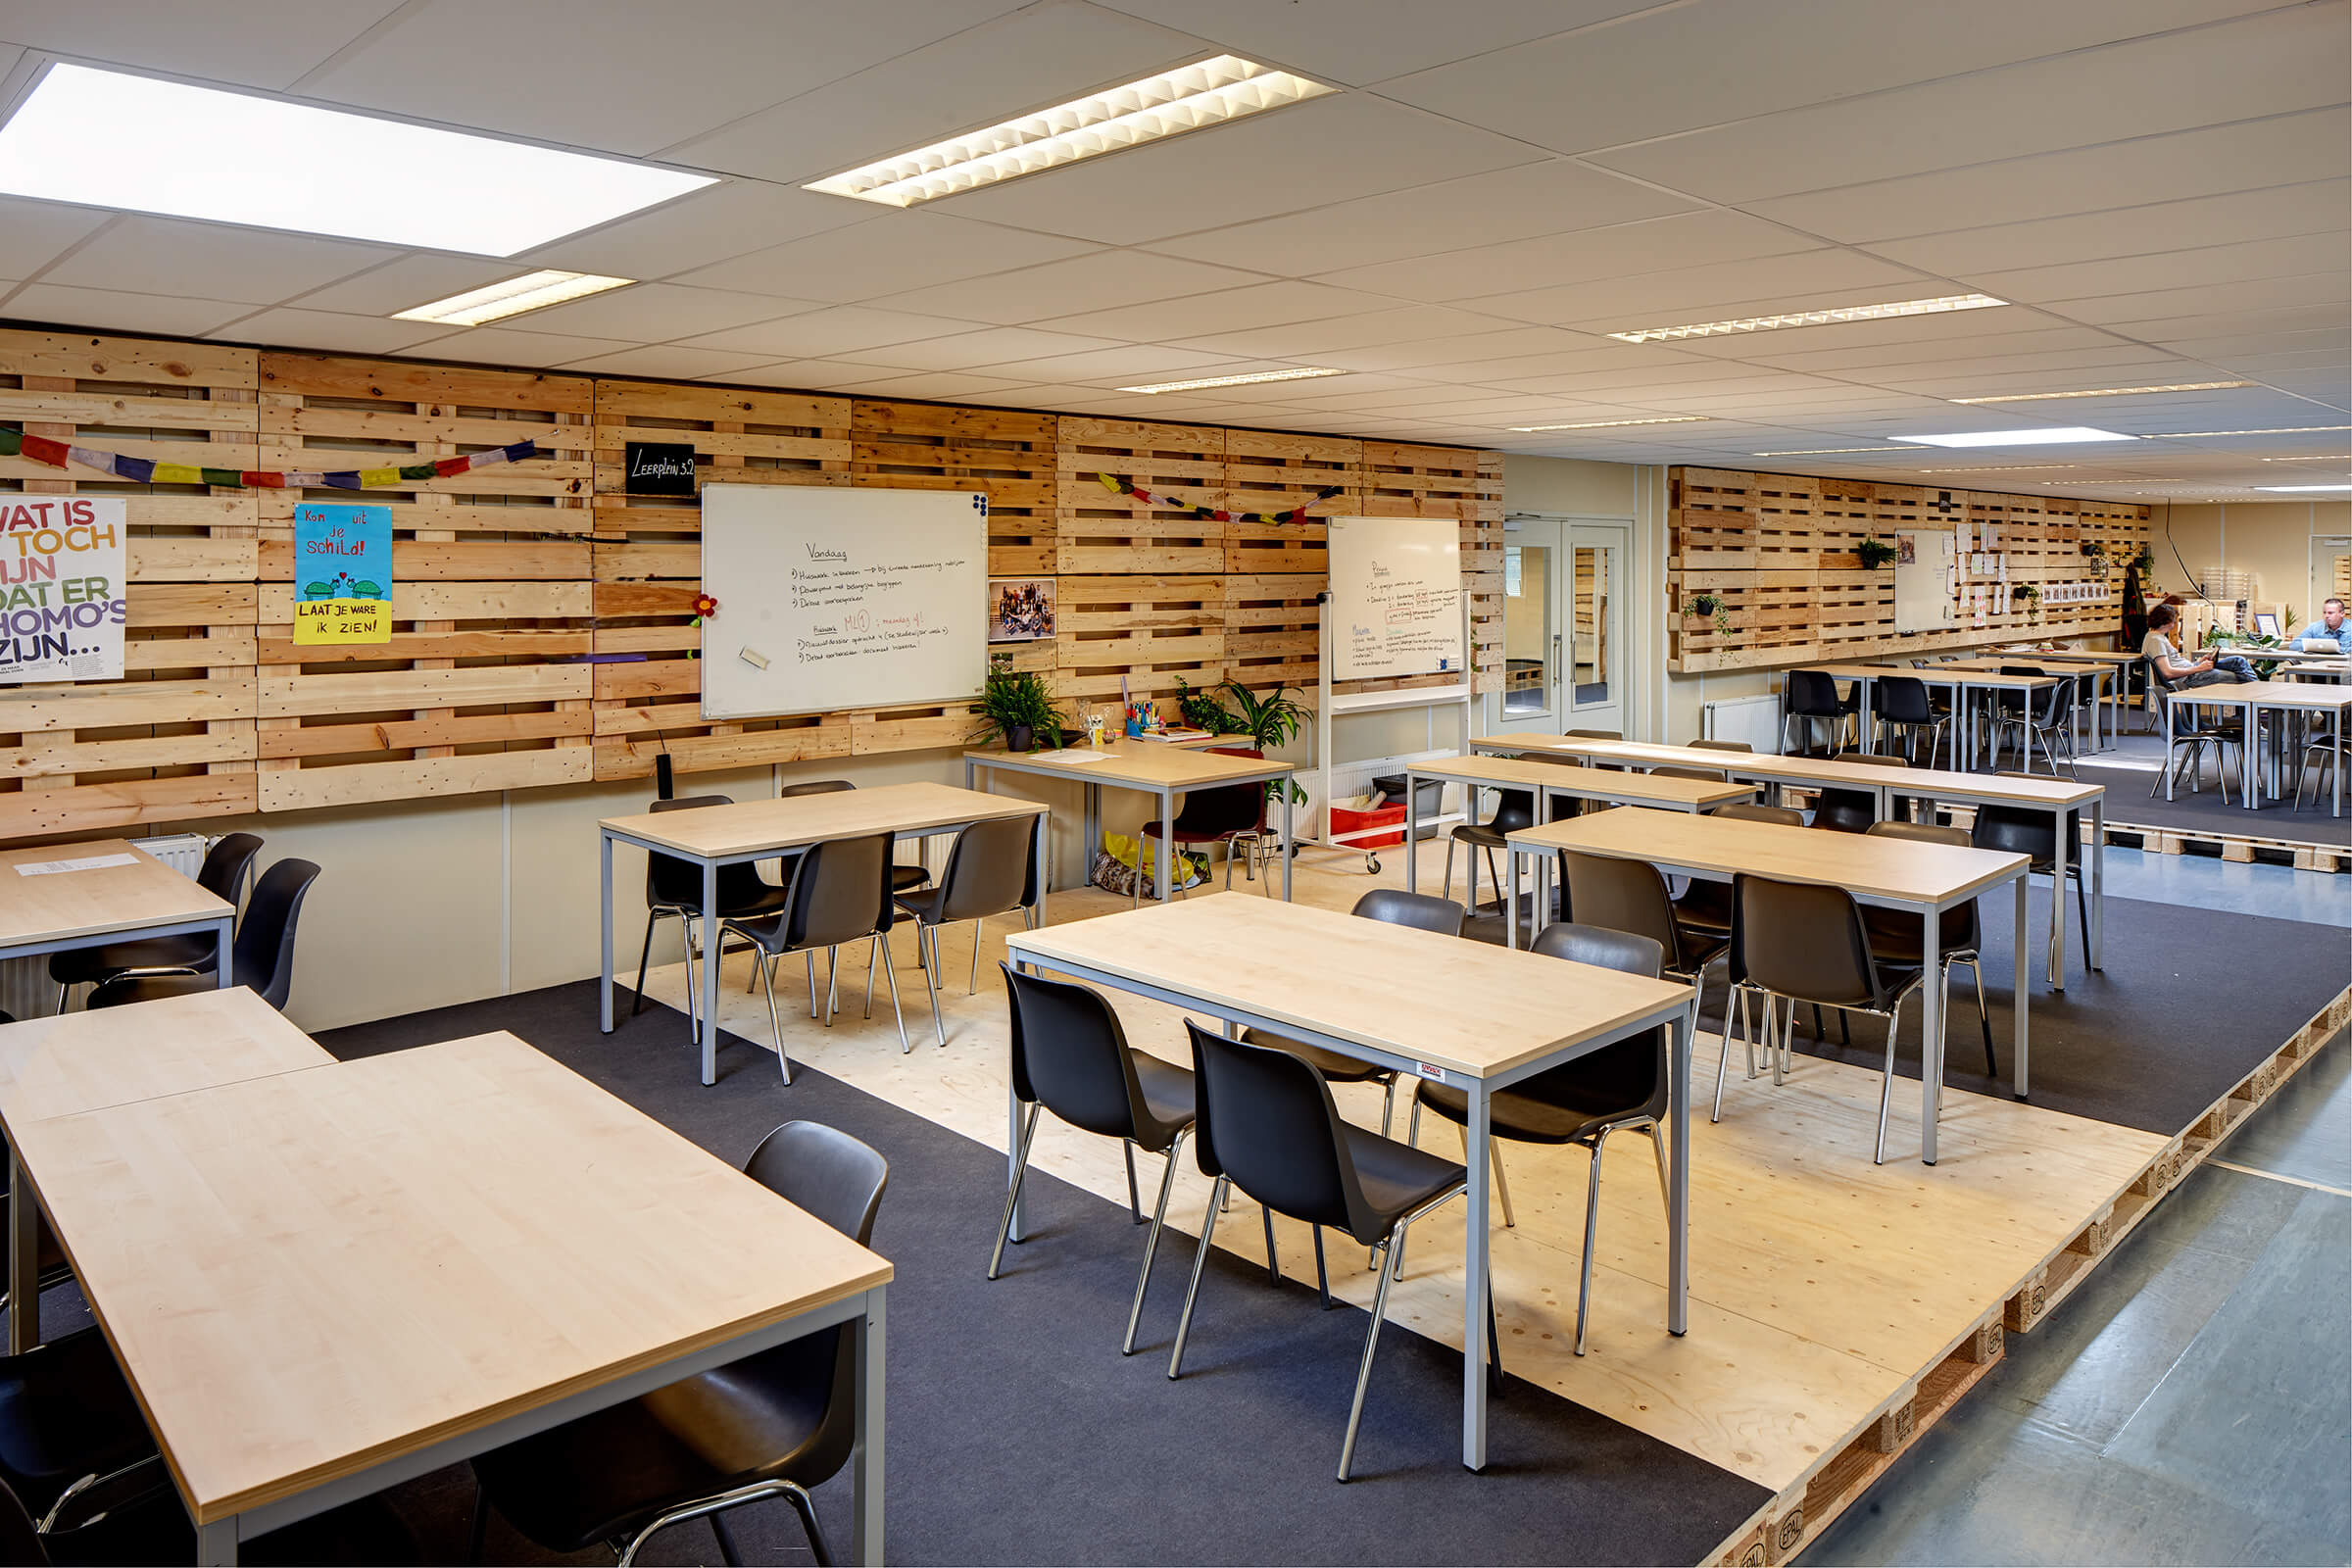 En complément des salles de classe, les espaces communs ont également été équipés temporairement avec du mobilier en location. 